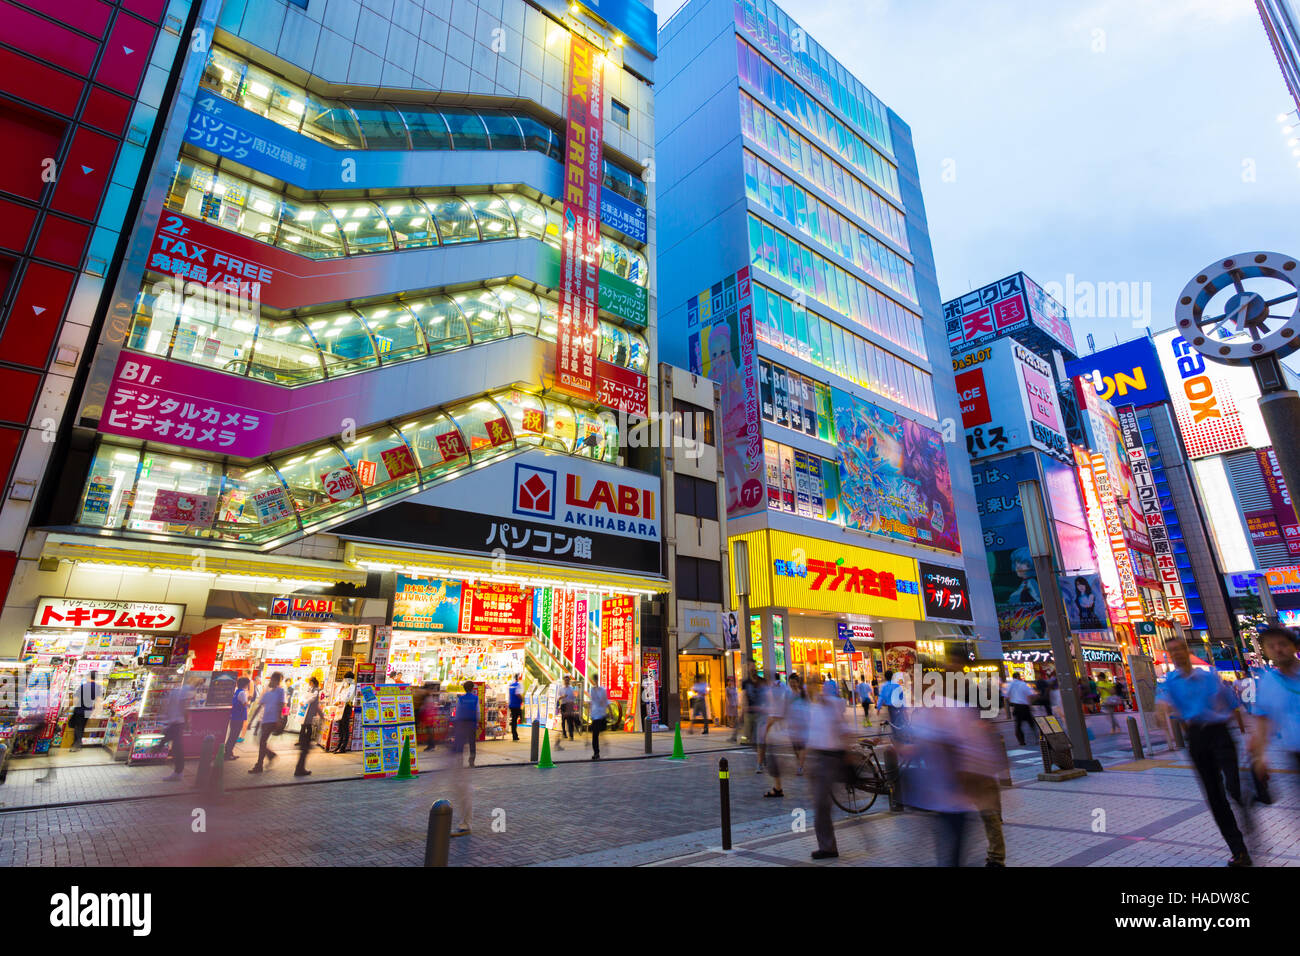 Multitudes de personas caminando, bullicioso barrio de cubo de electrónica Akihabara entre luces brillantes y letreros de tienda, advertis Foto de stock